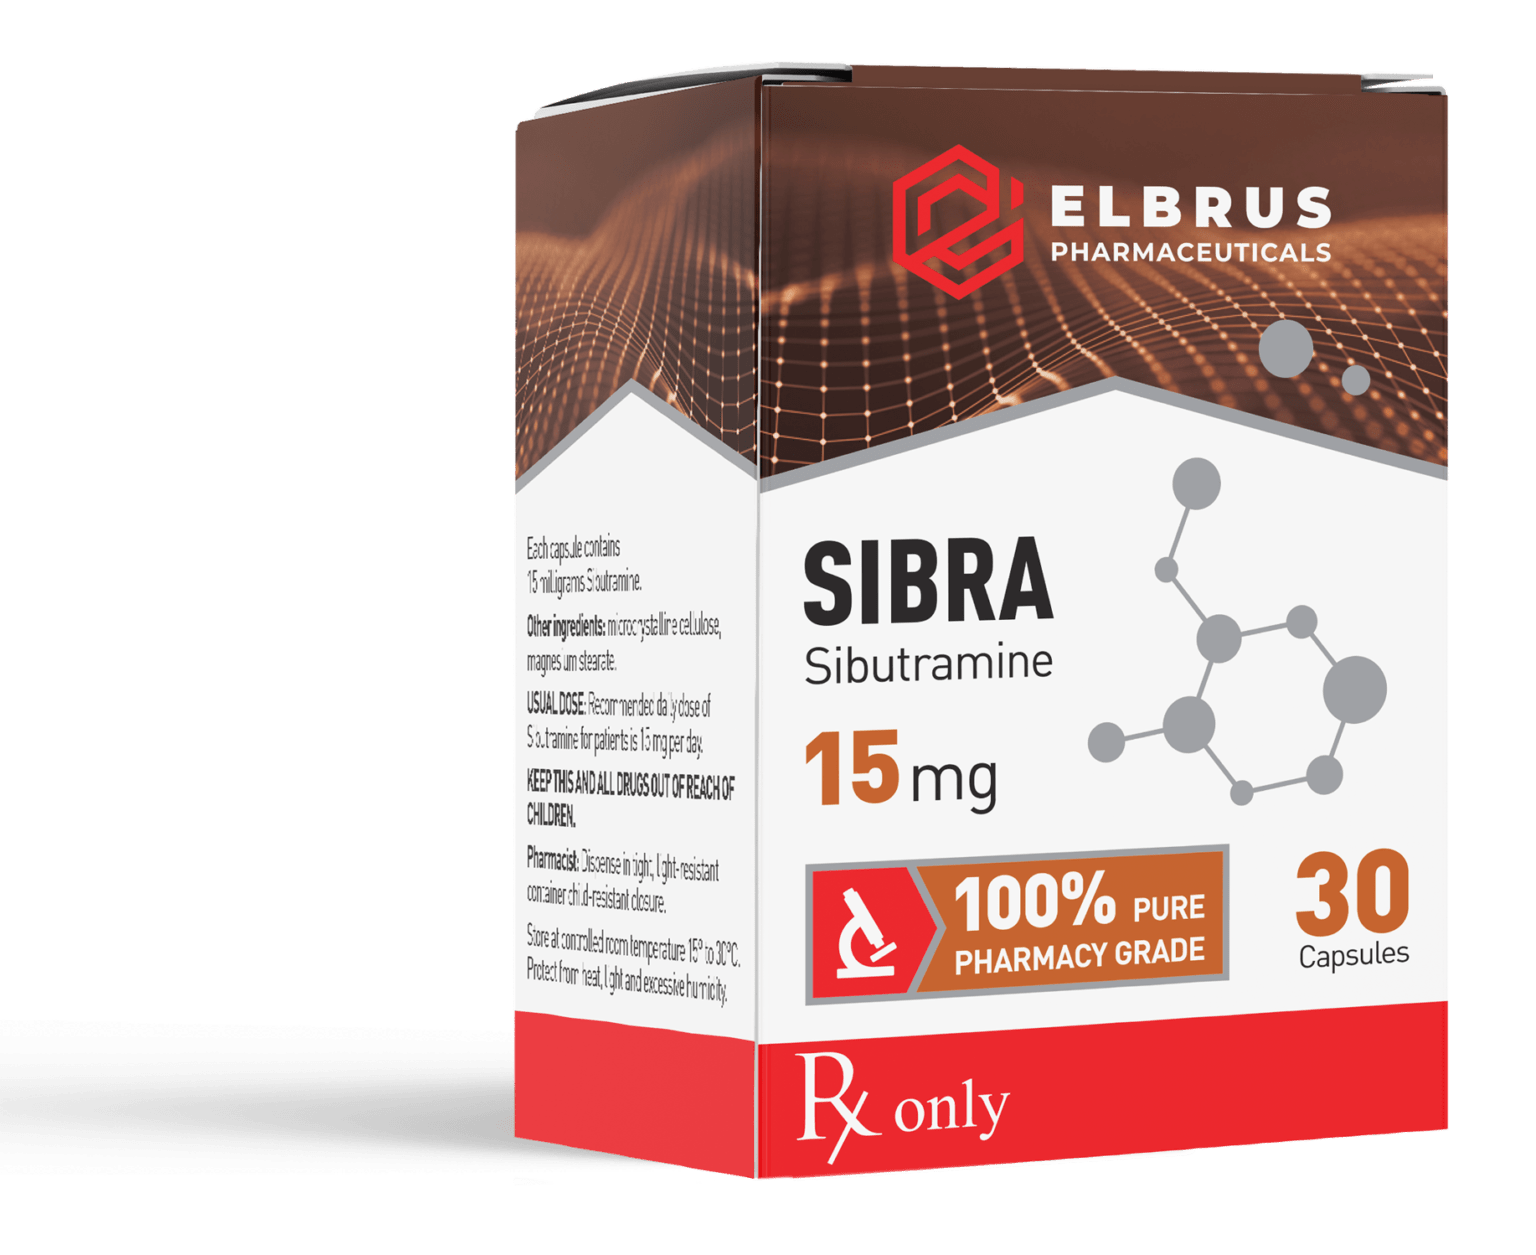 Elbrus Pharmaceuticals Sibra (Sibutramine)